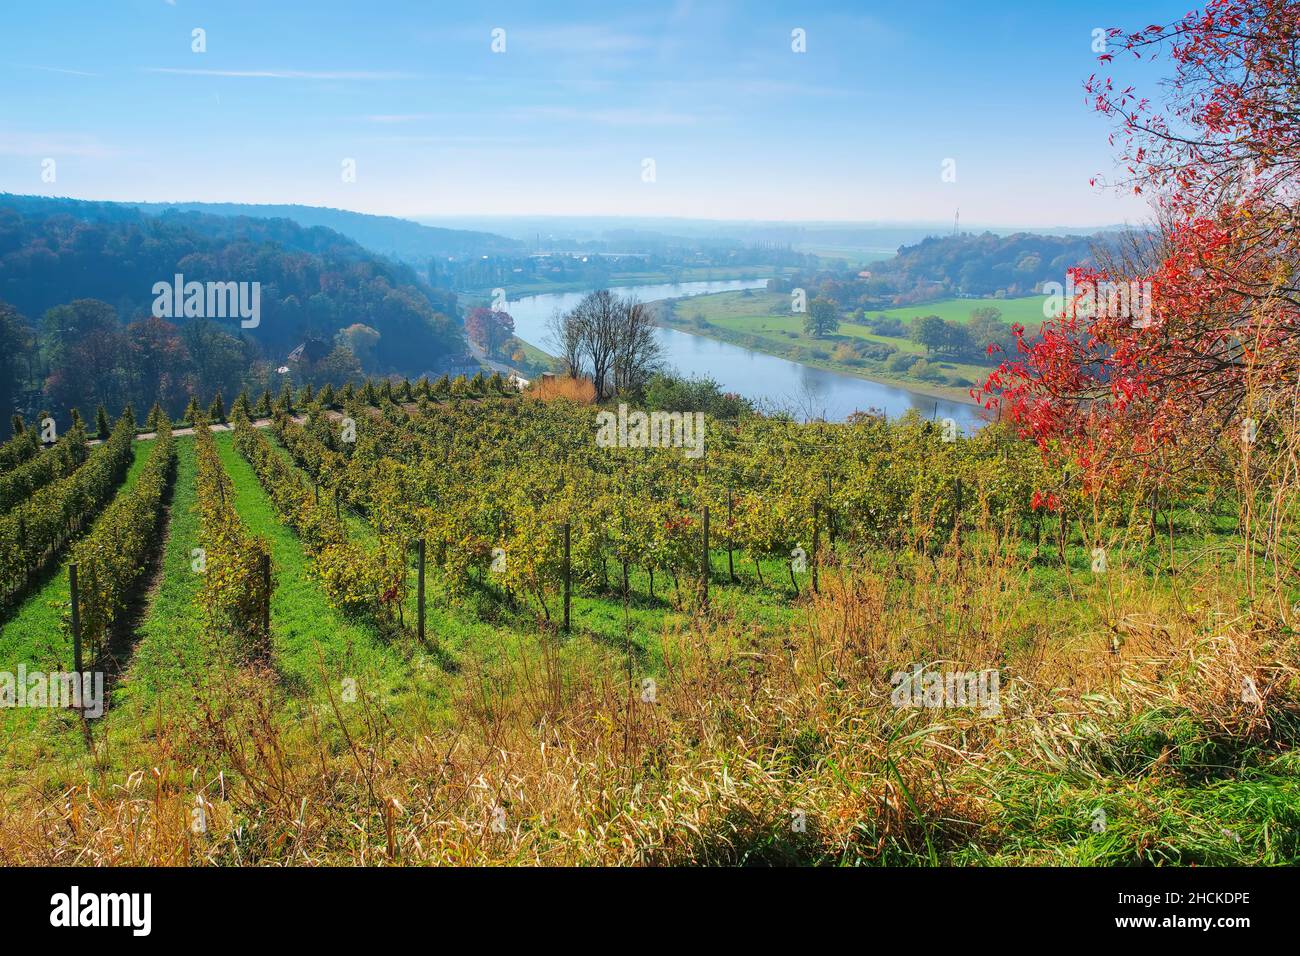 Vista sobre los viñedos de otoño cerca del río Elba en Sajonia, Alemania Foto de stock